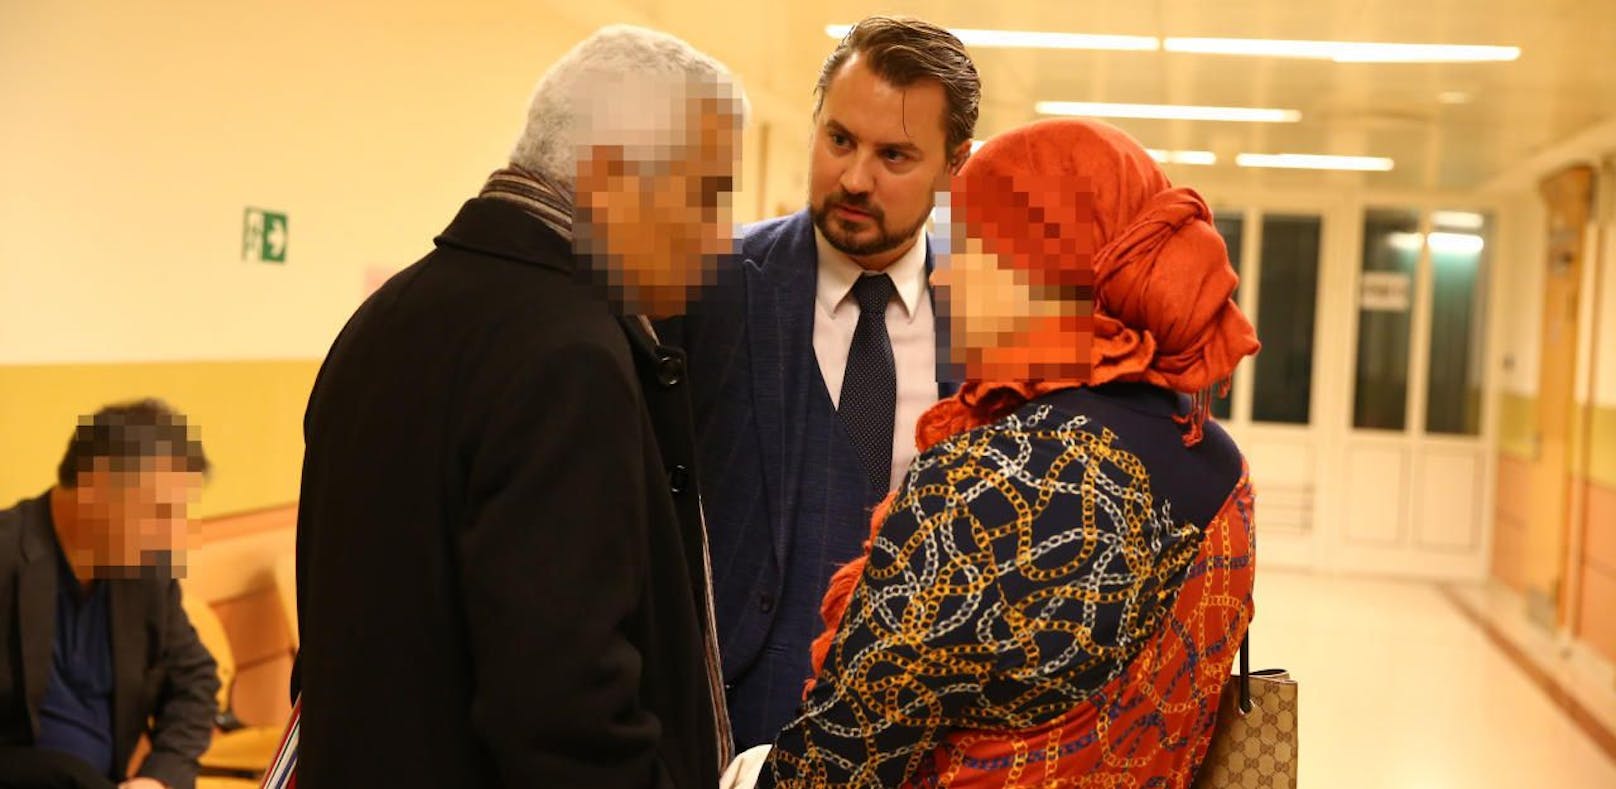 Der Haupt-Angeklagte Hassan M. (l.) mit Anwalt und der mitangeklagten Lebensgefährtin Fatma M.